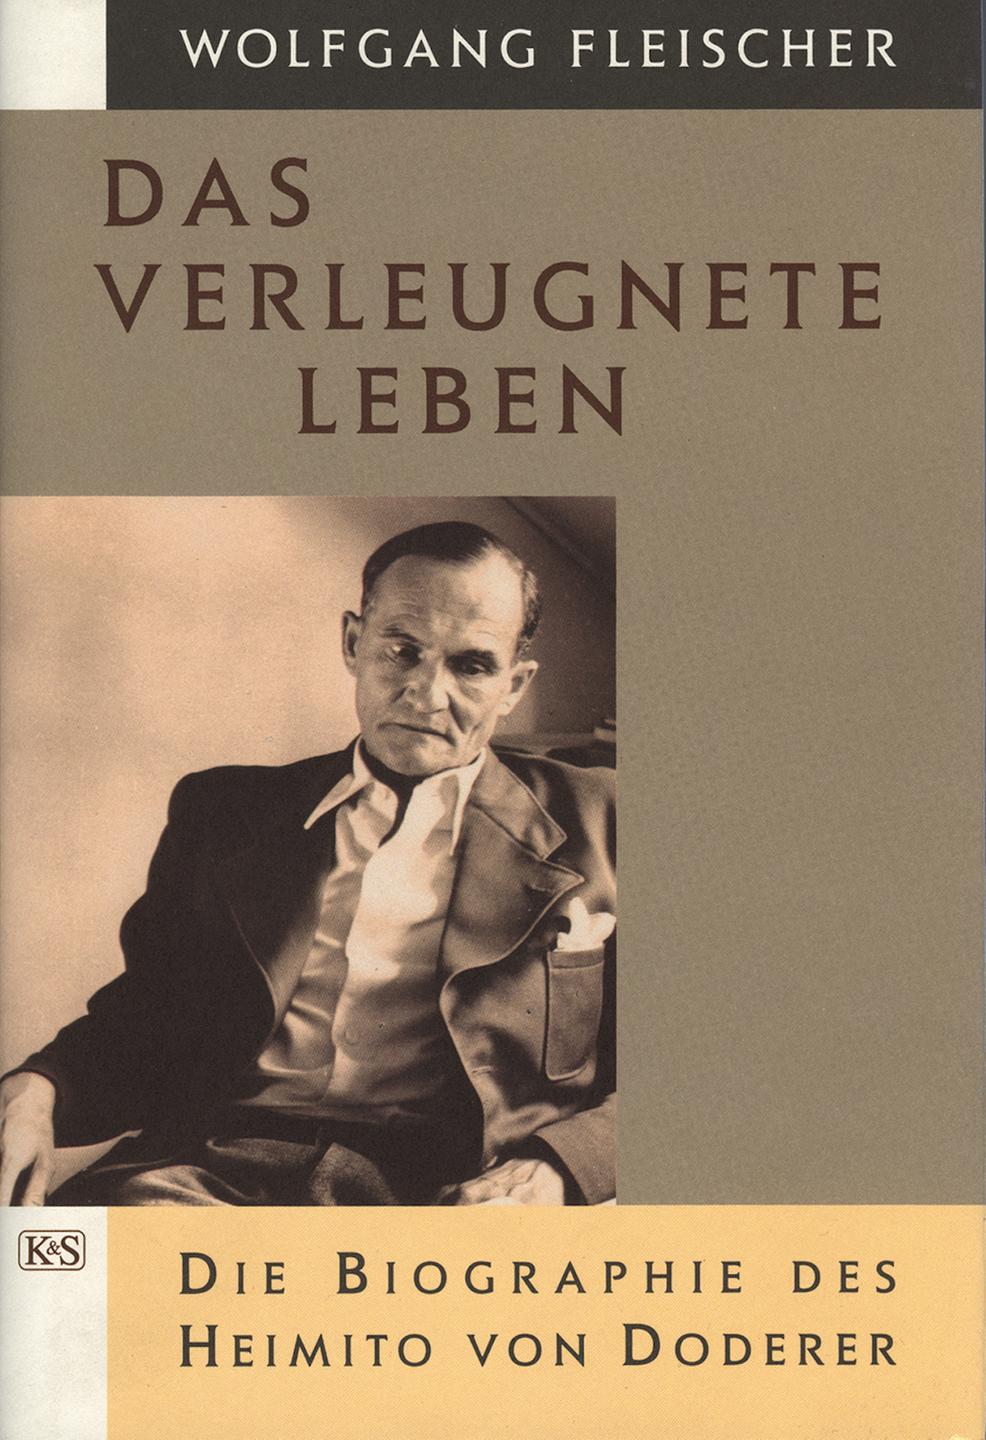 Buchcover zur Biografie "Das verleugnete Leben" von Wolfgang Fleischer.